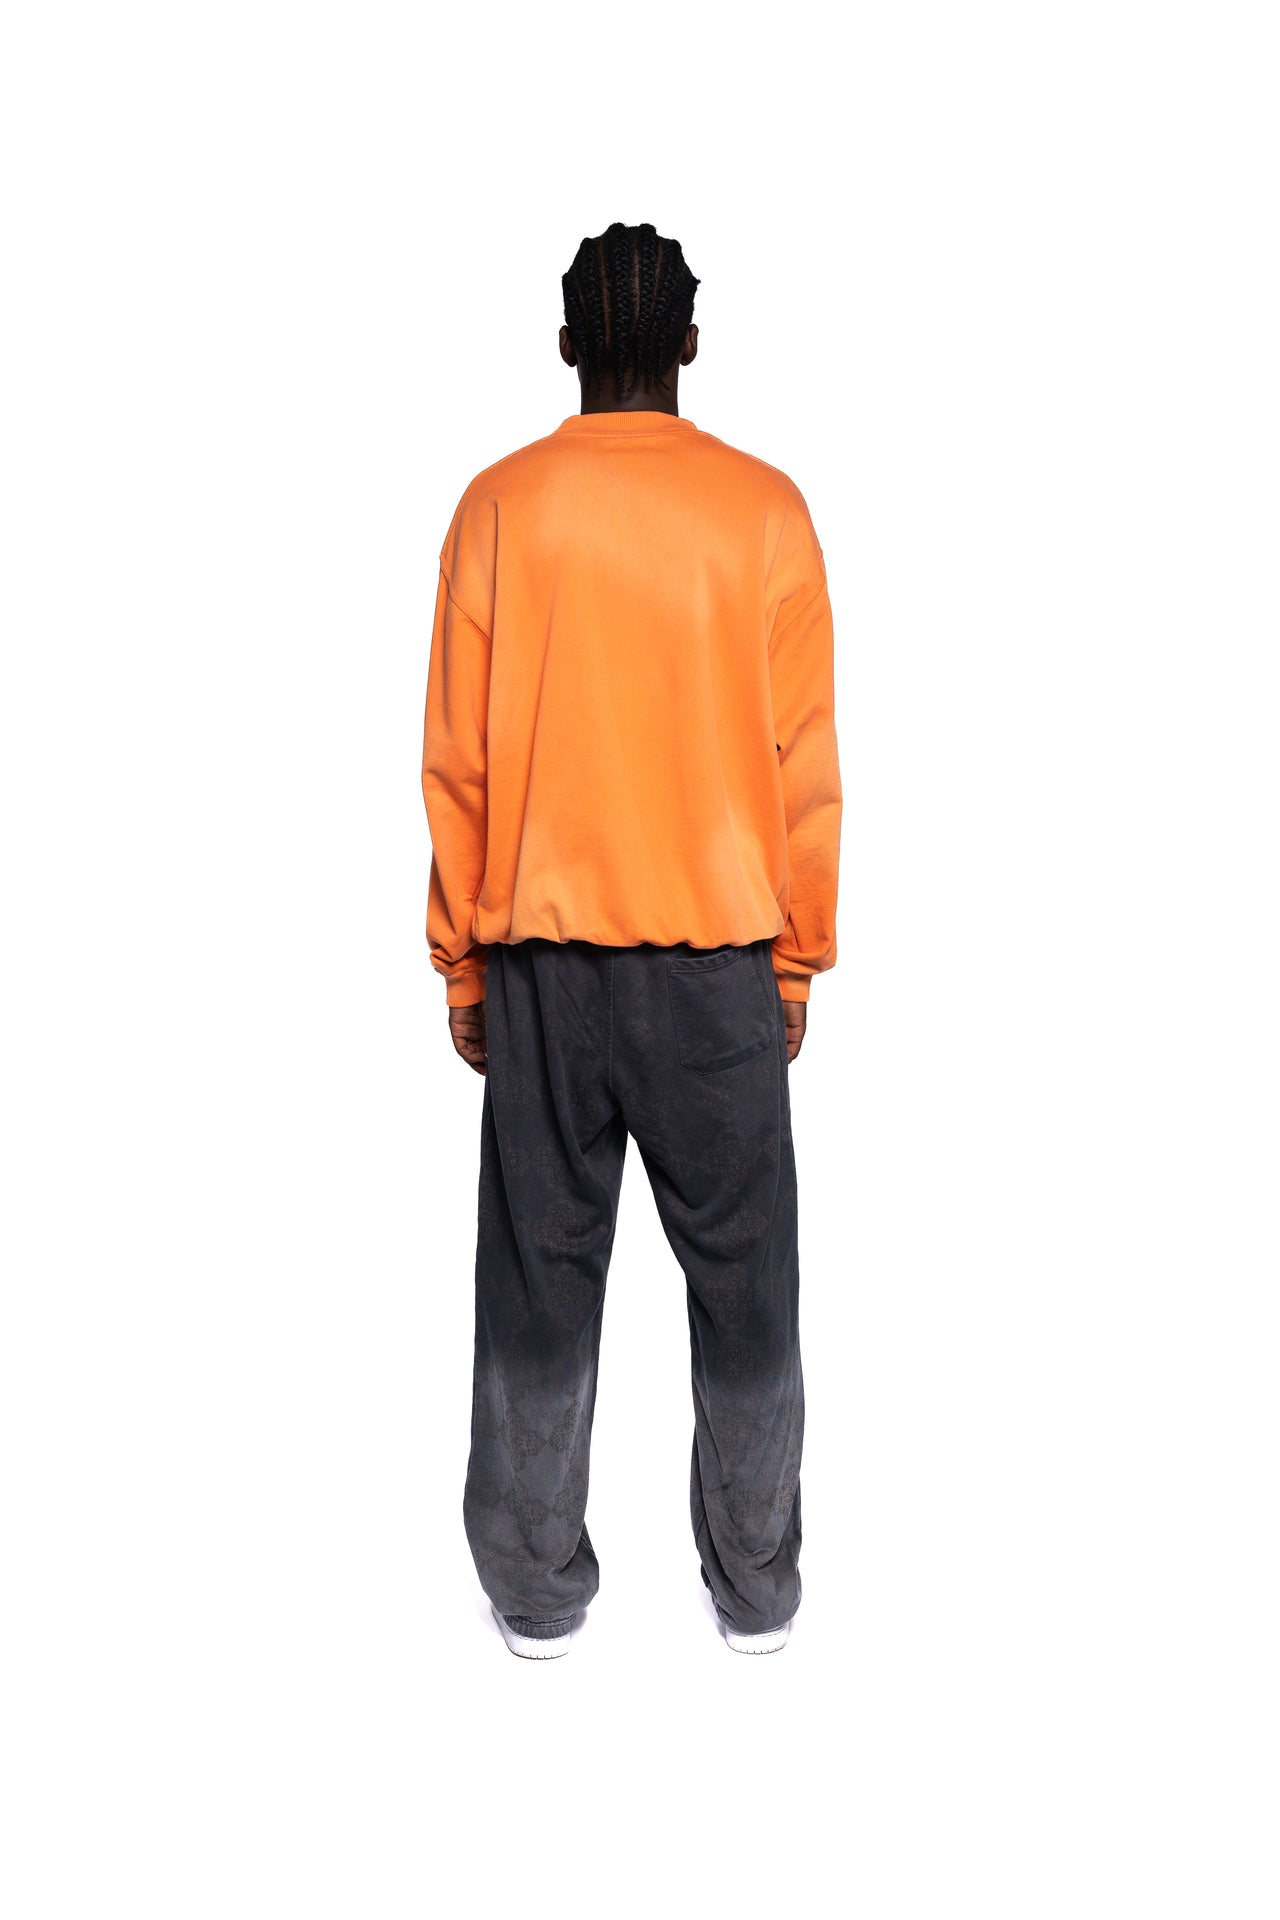 Rückansicht des Herren Sweatshirts von Decider in leuchtendem Orange